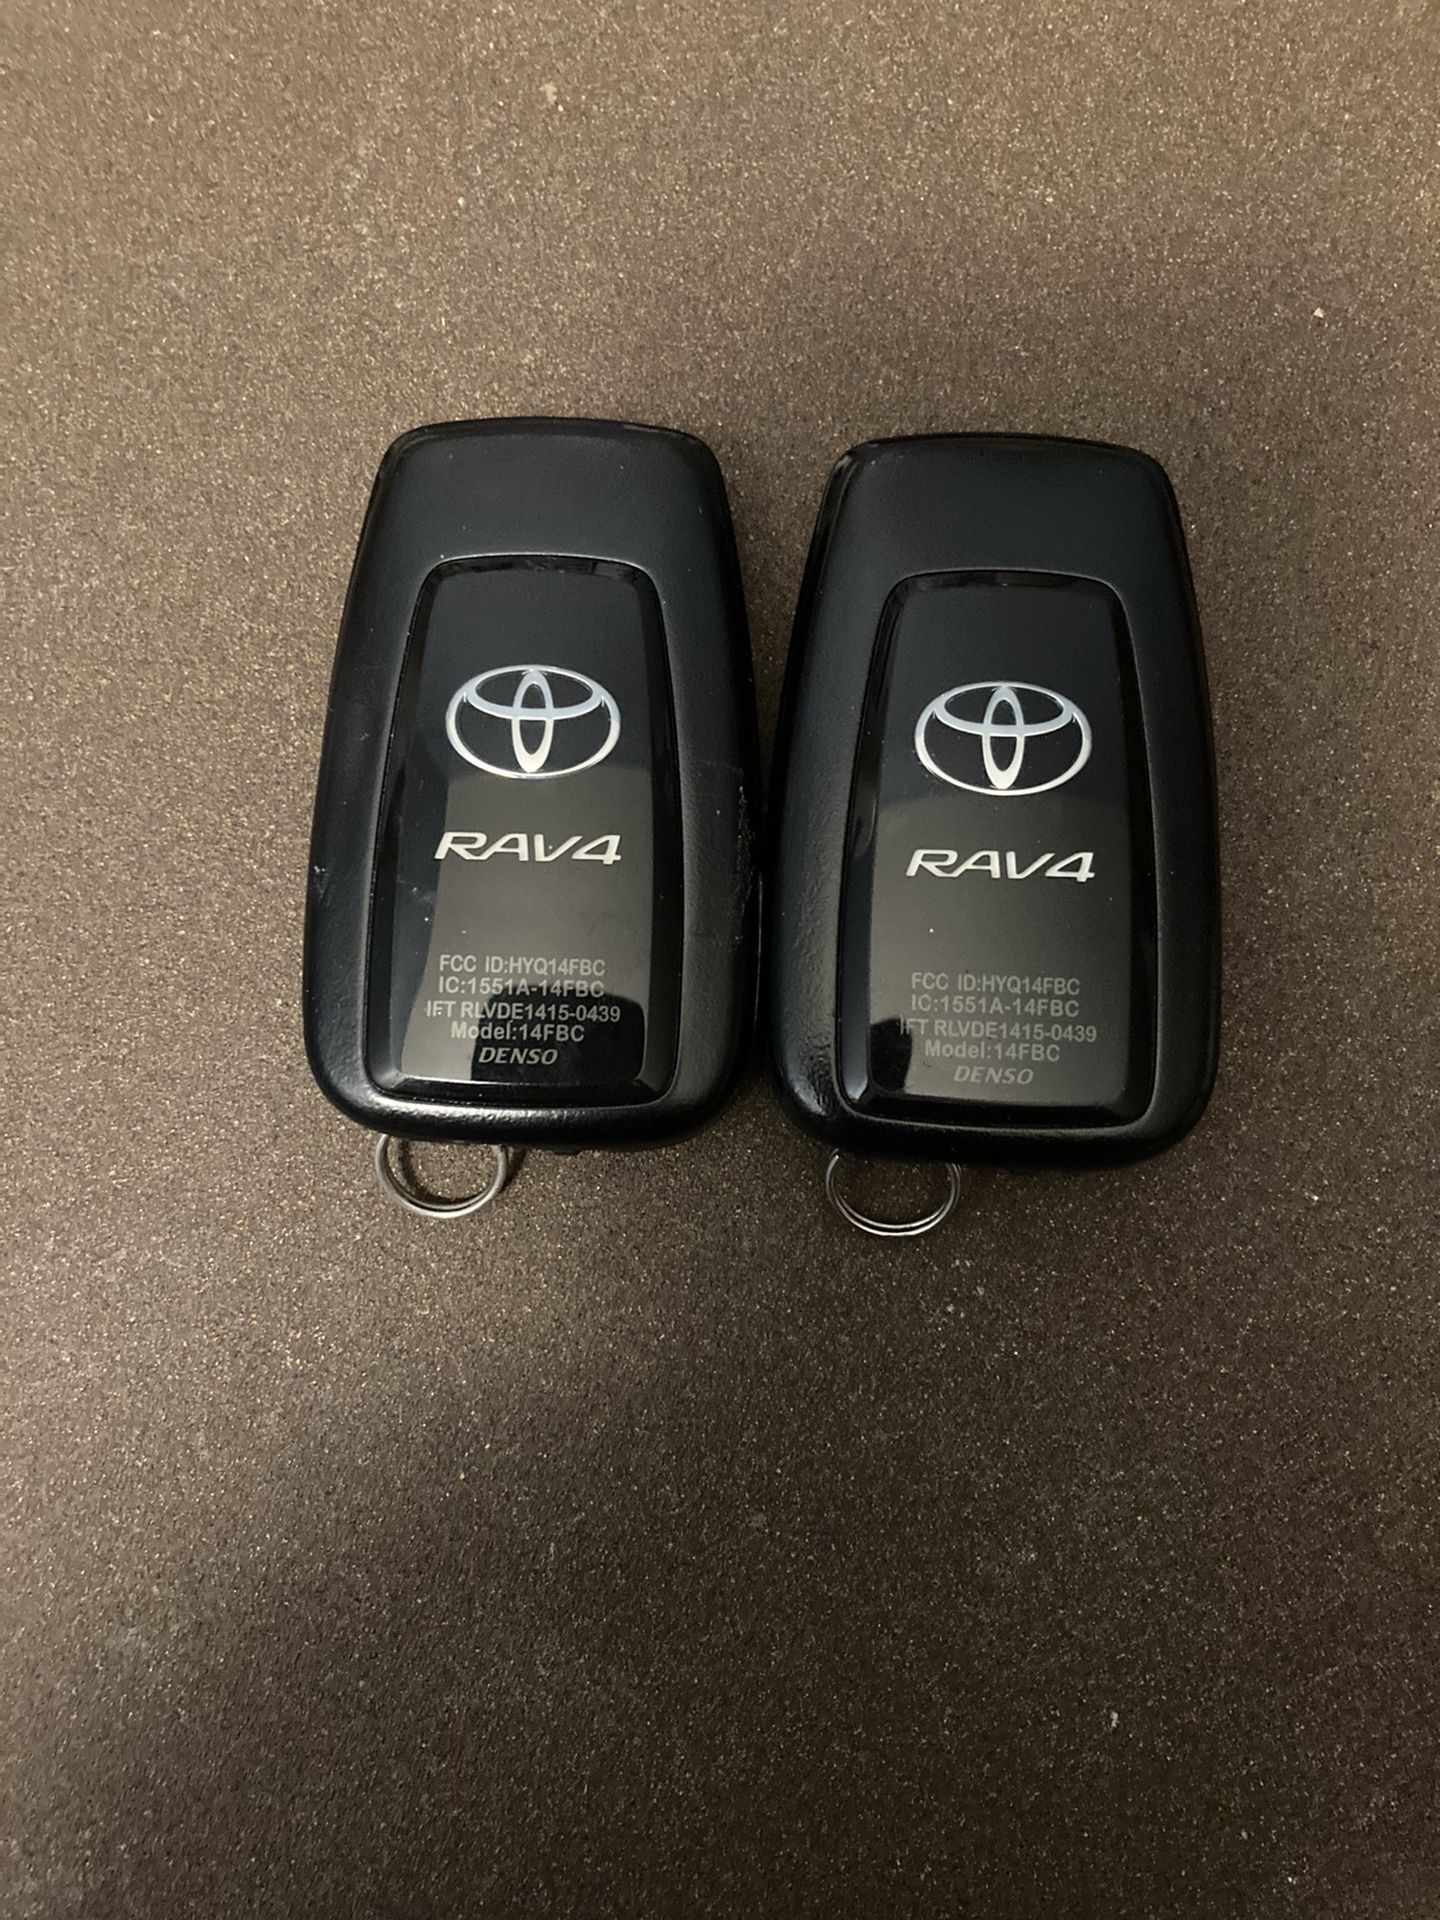 Two Keyless Entry Toyota Key Fobs Rav4